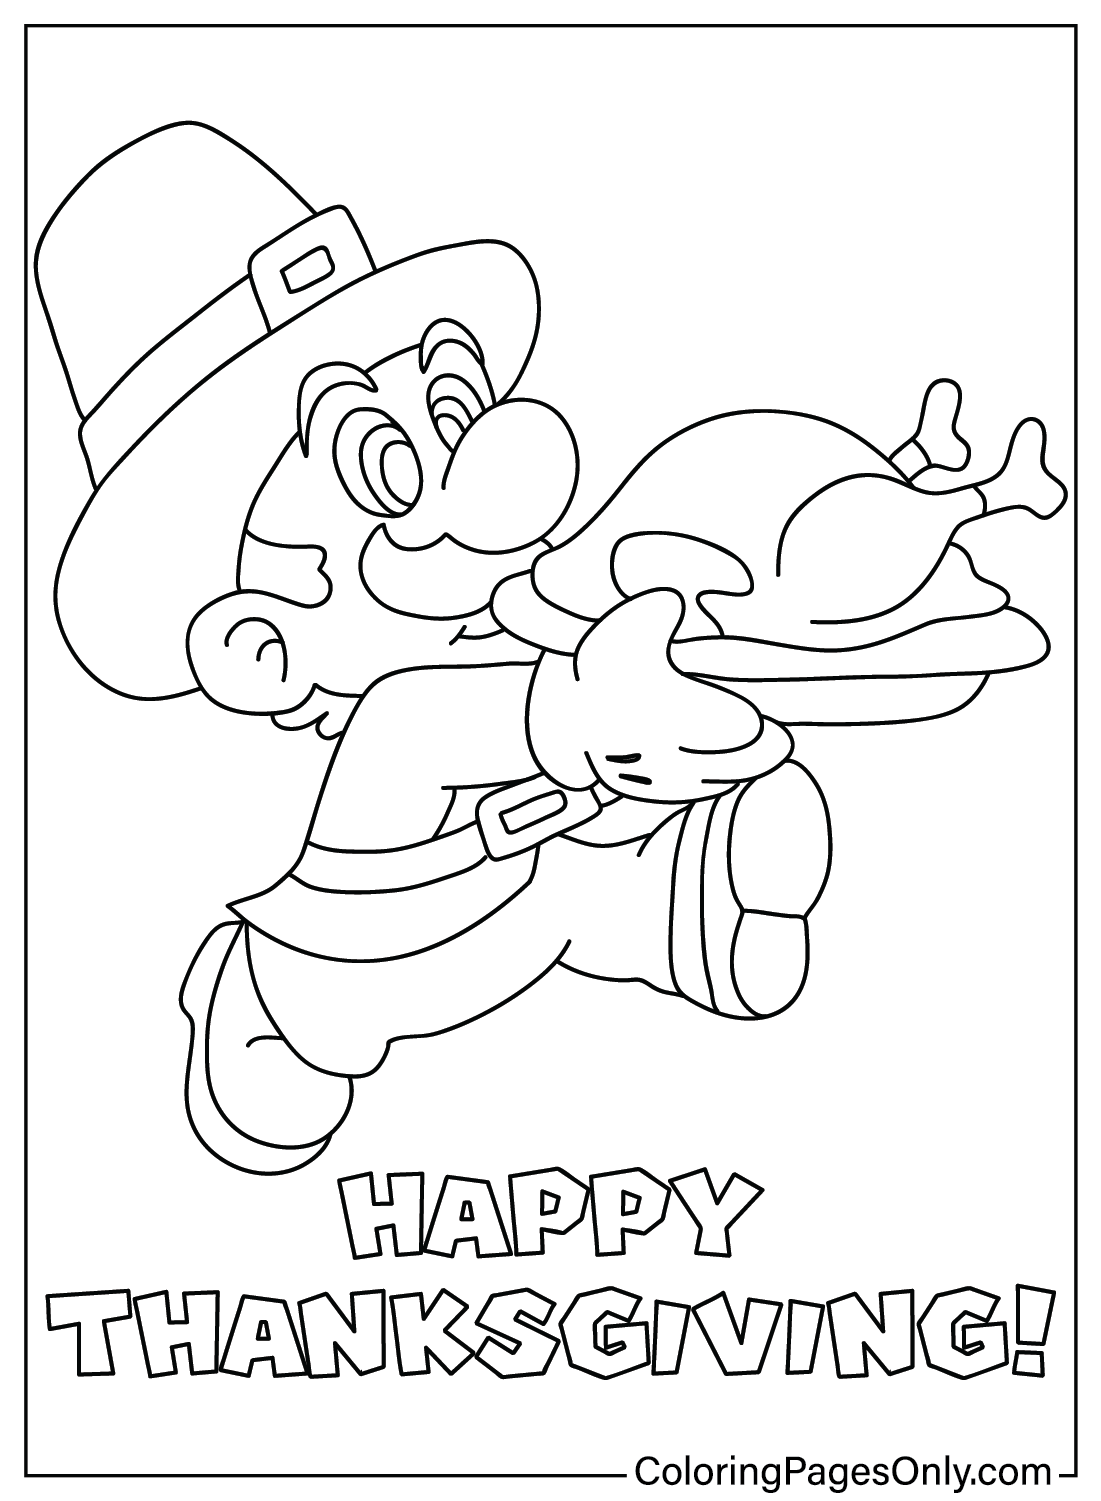 Página para colorear de Mario de Acción de Gracias de dibujos animados de Acción de Gracias